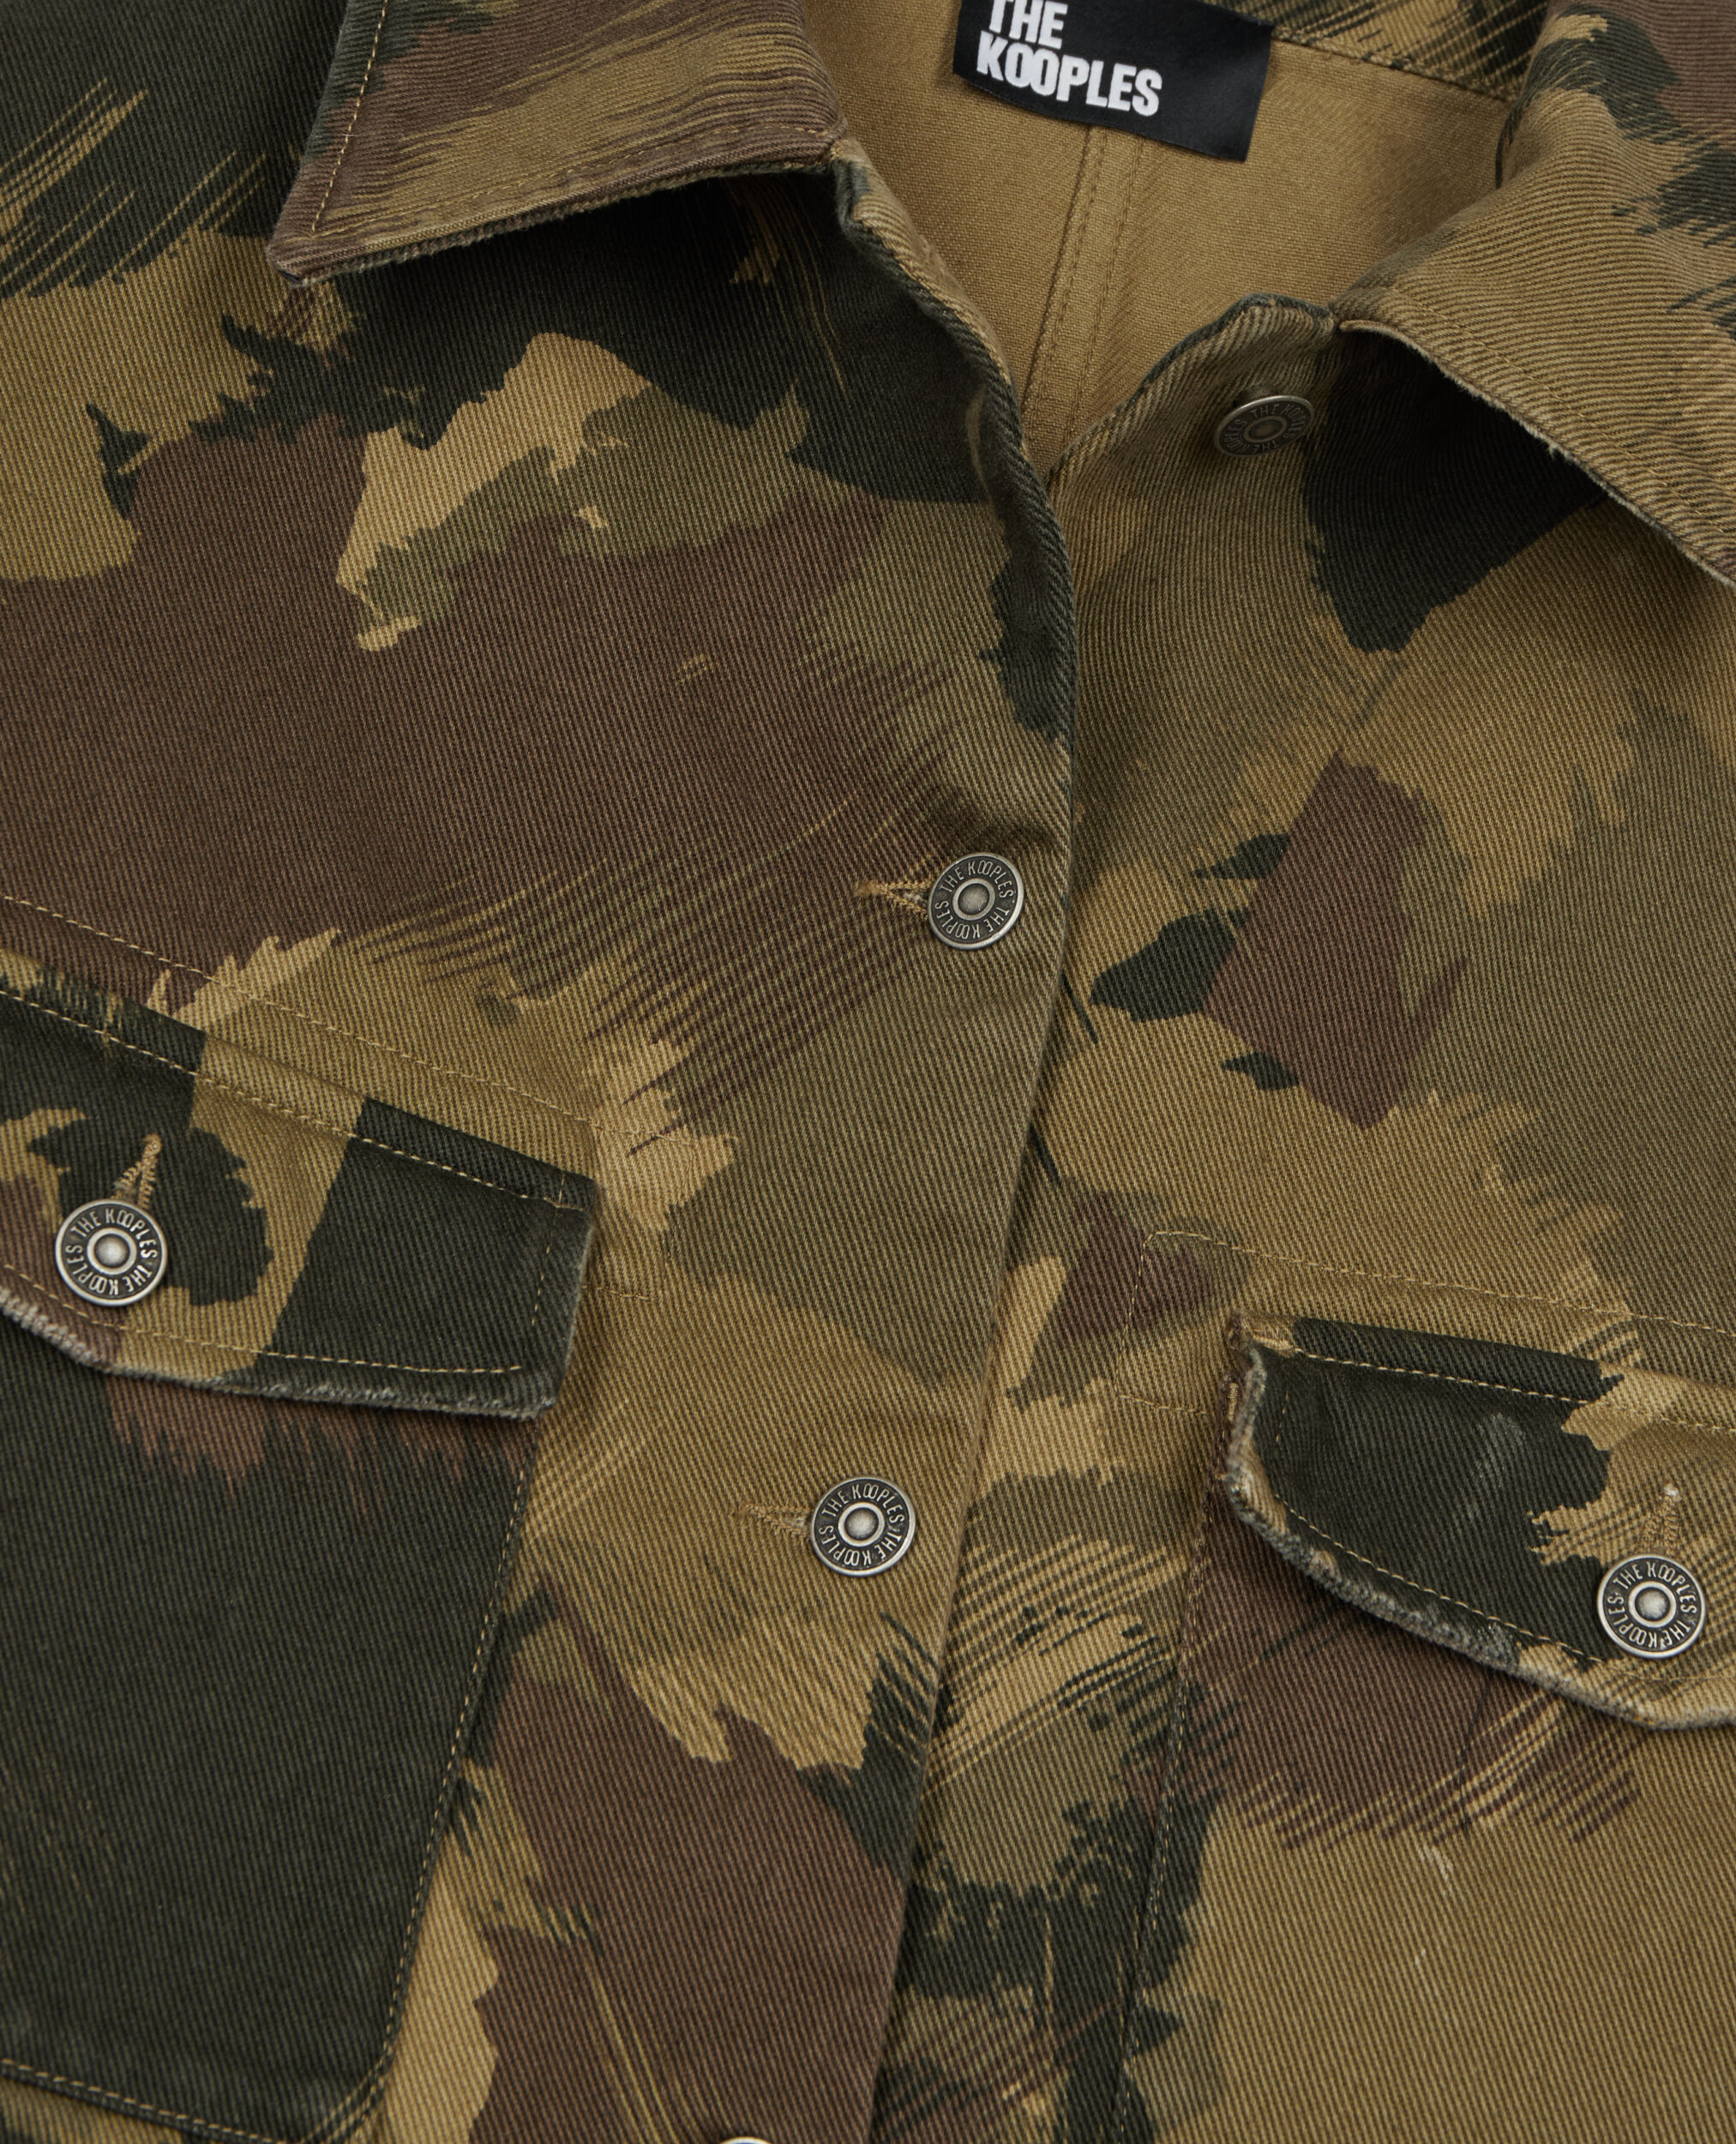 Short camouflage denim jacket, CAMOUFLAGE, hi-res image number null